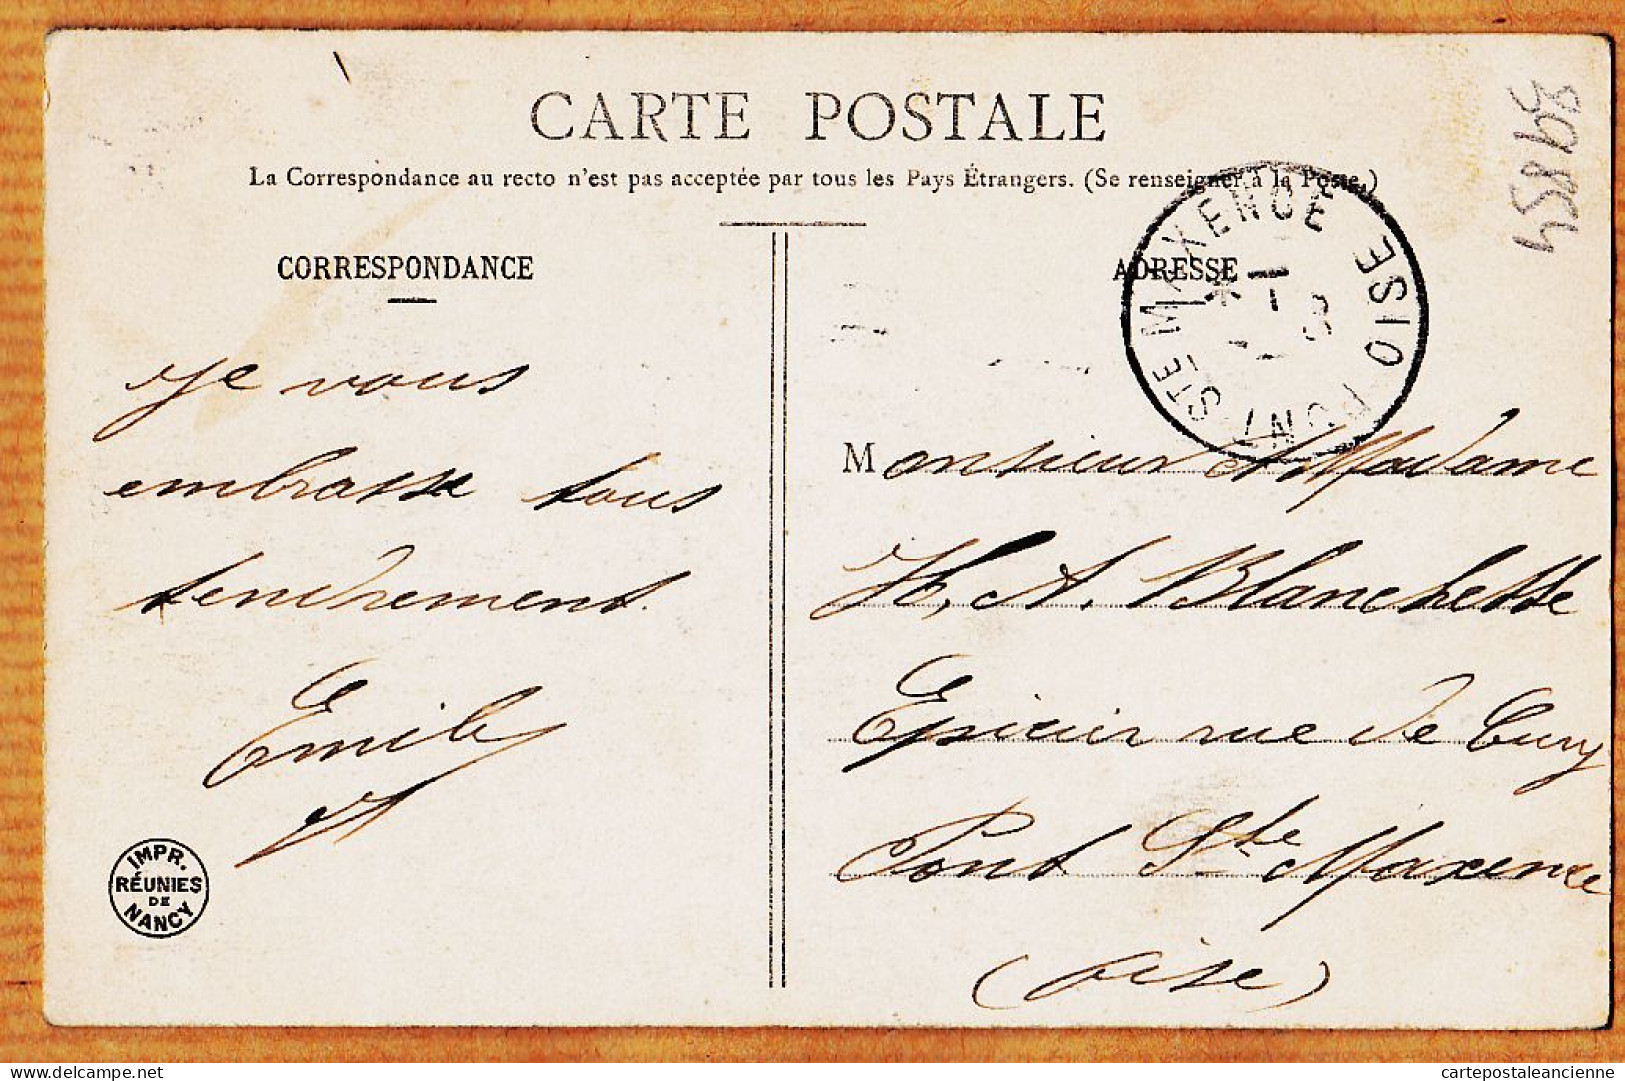 38740  / ⭐ Angelot Cupidon BONNE ANNEE 1906 A TOUS 31-12-1905 à BLANCHETTE Epicier Rue Cury Pont-Ste-Maxence-BERGERE - Nouvel An